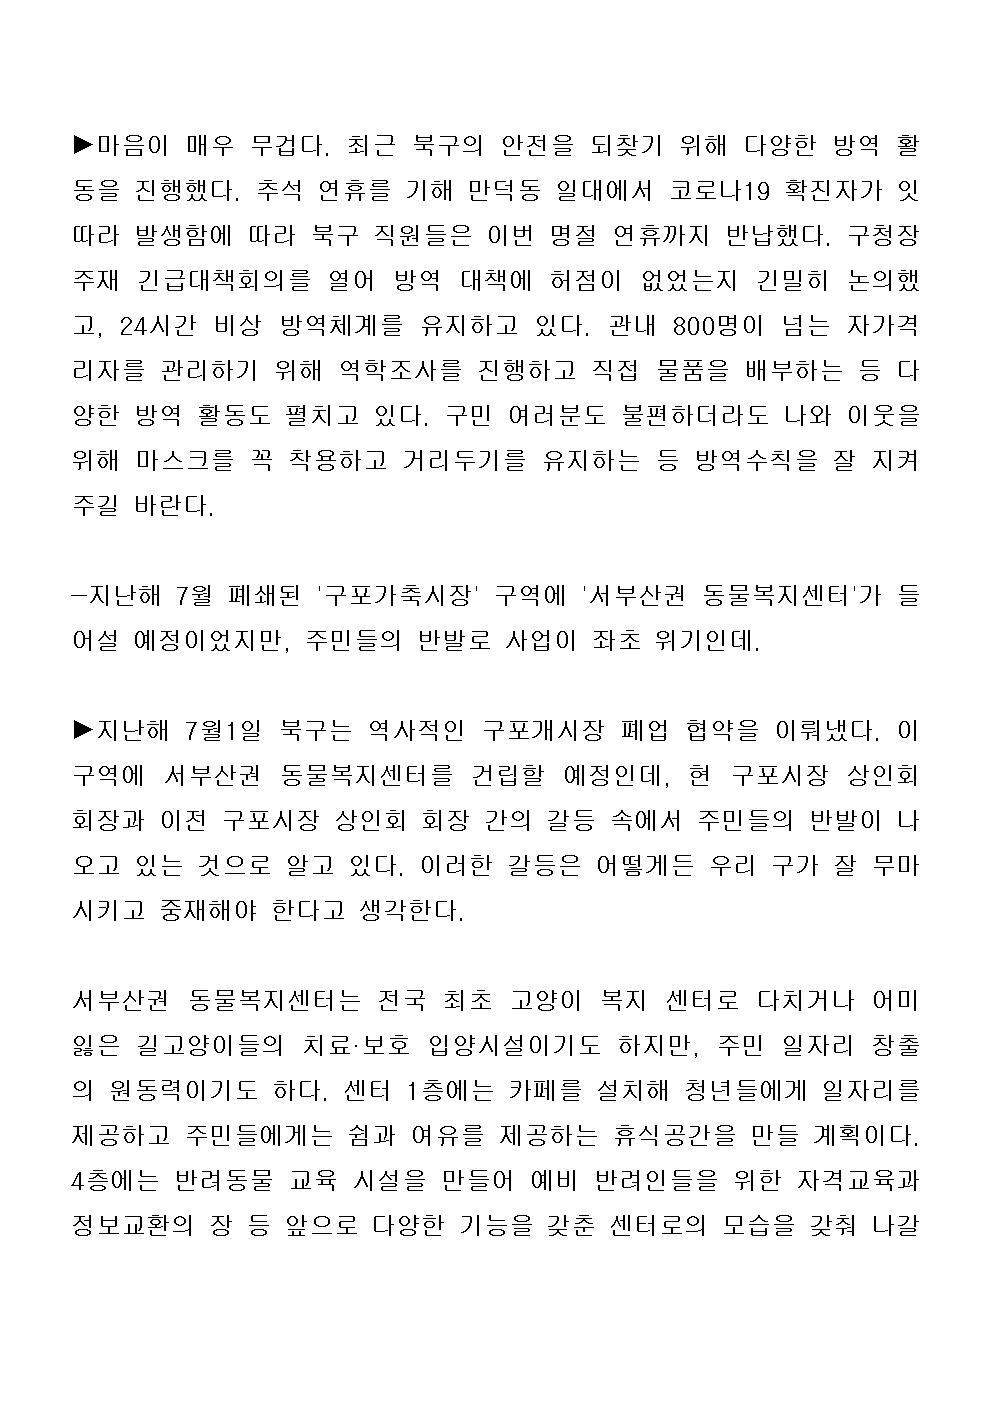 (20.10.08) 부산 북구청장, 30만 구민과 함께 새로운 미래 그려가겠다_구청장 인터뷰 (1)